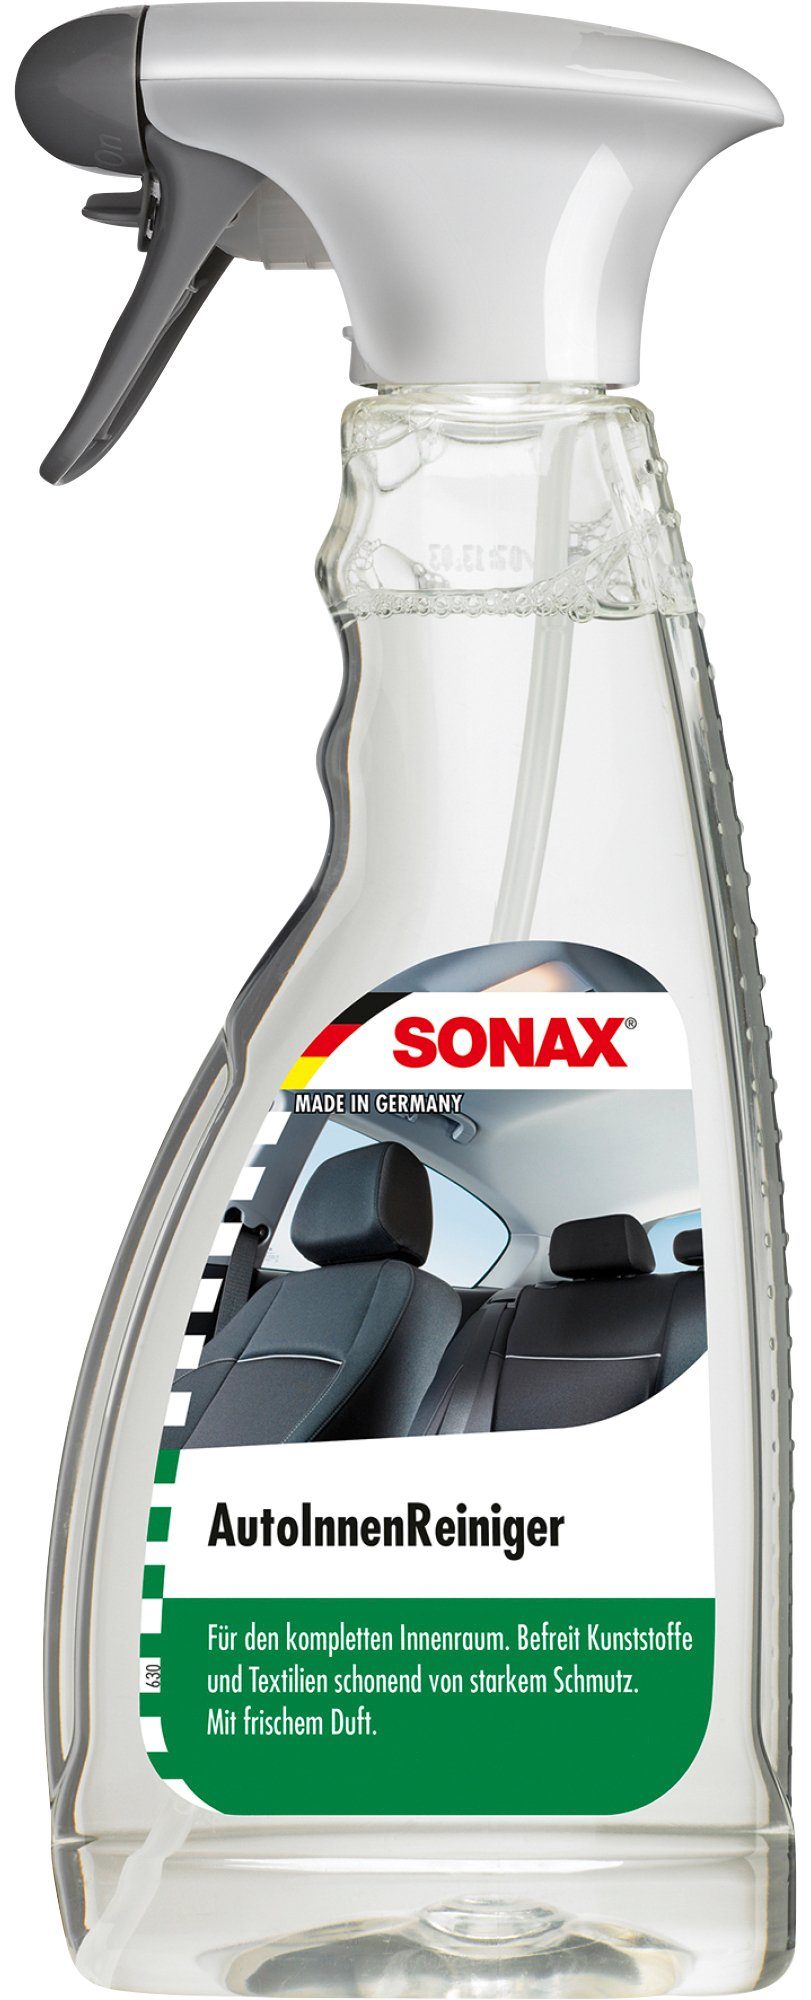 Sonax »AutoInnenReiniger« Auto-Reinigungsmittel (500 ml)